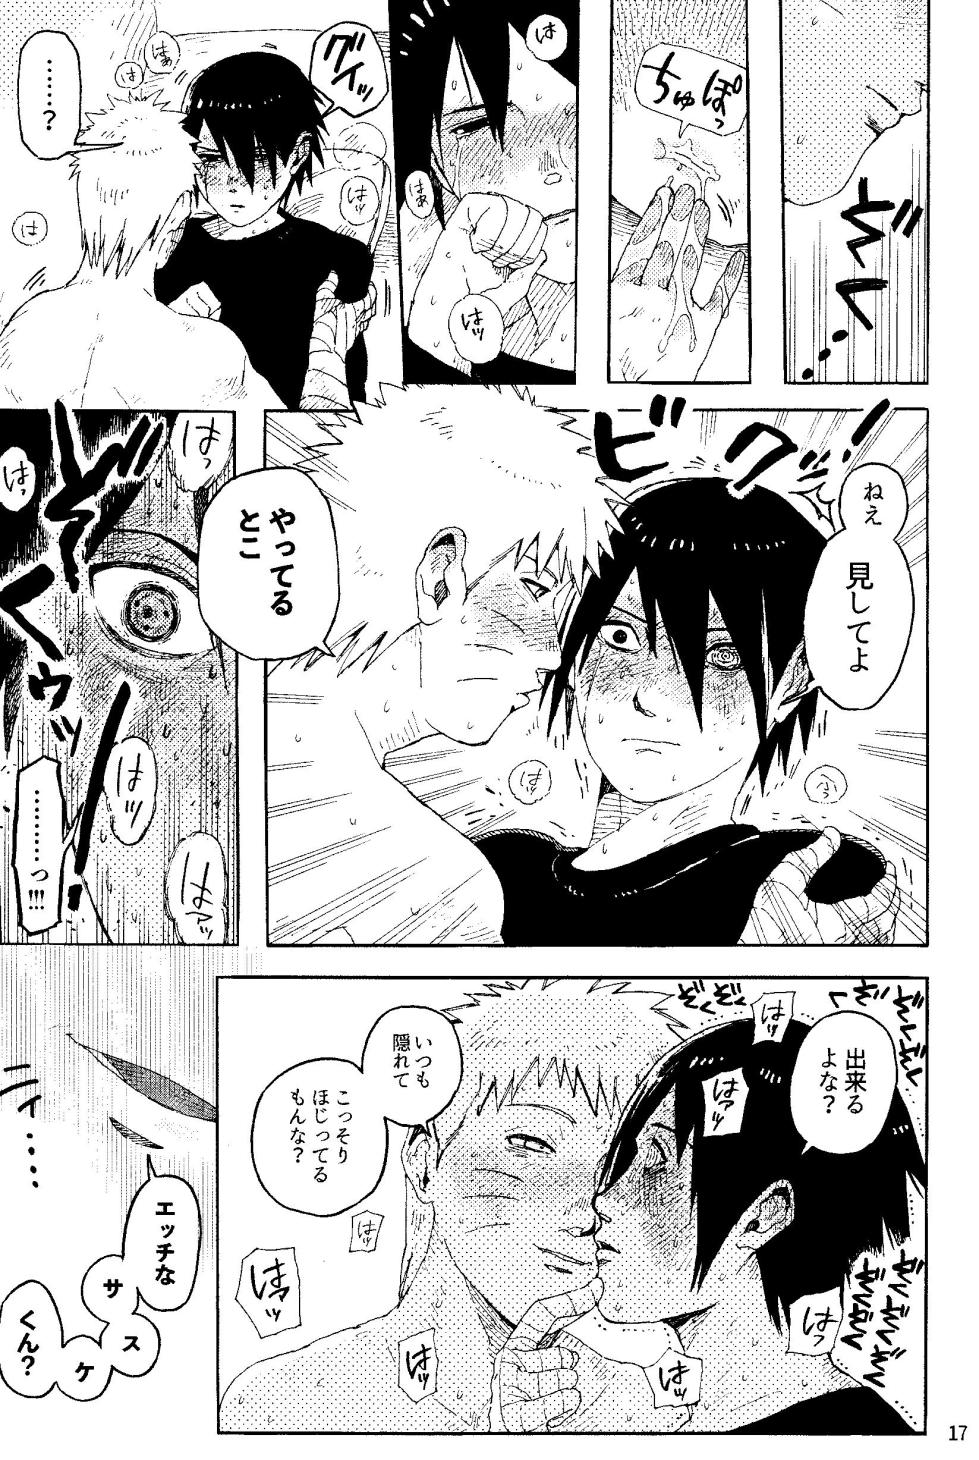 [Mutamuta Land (Mutako)] THE FIRST ep 7.5 (Naruto) - Page 19